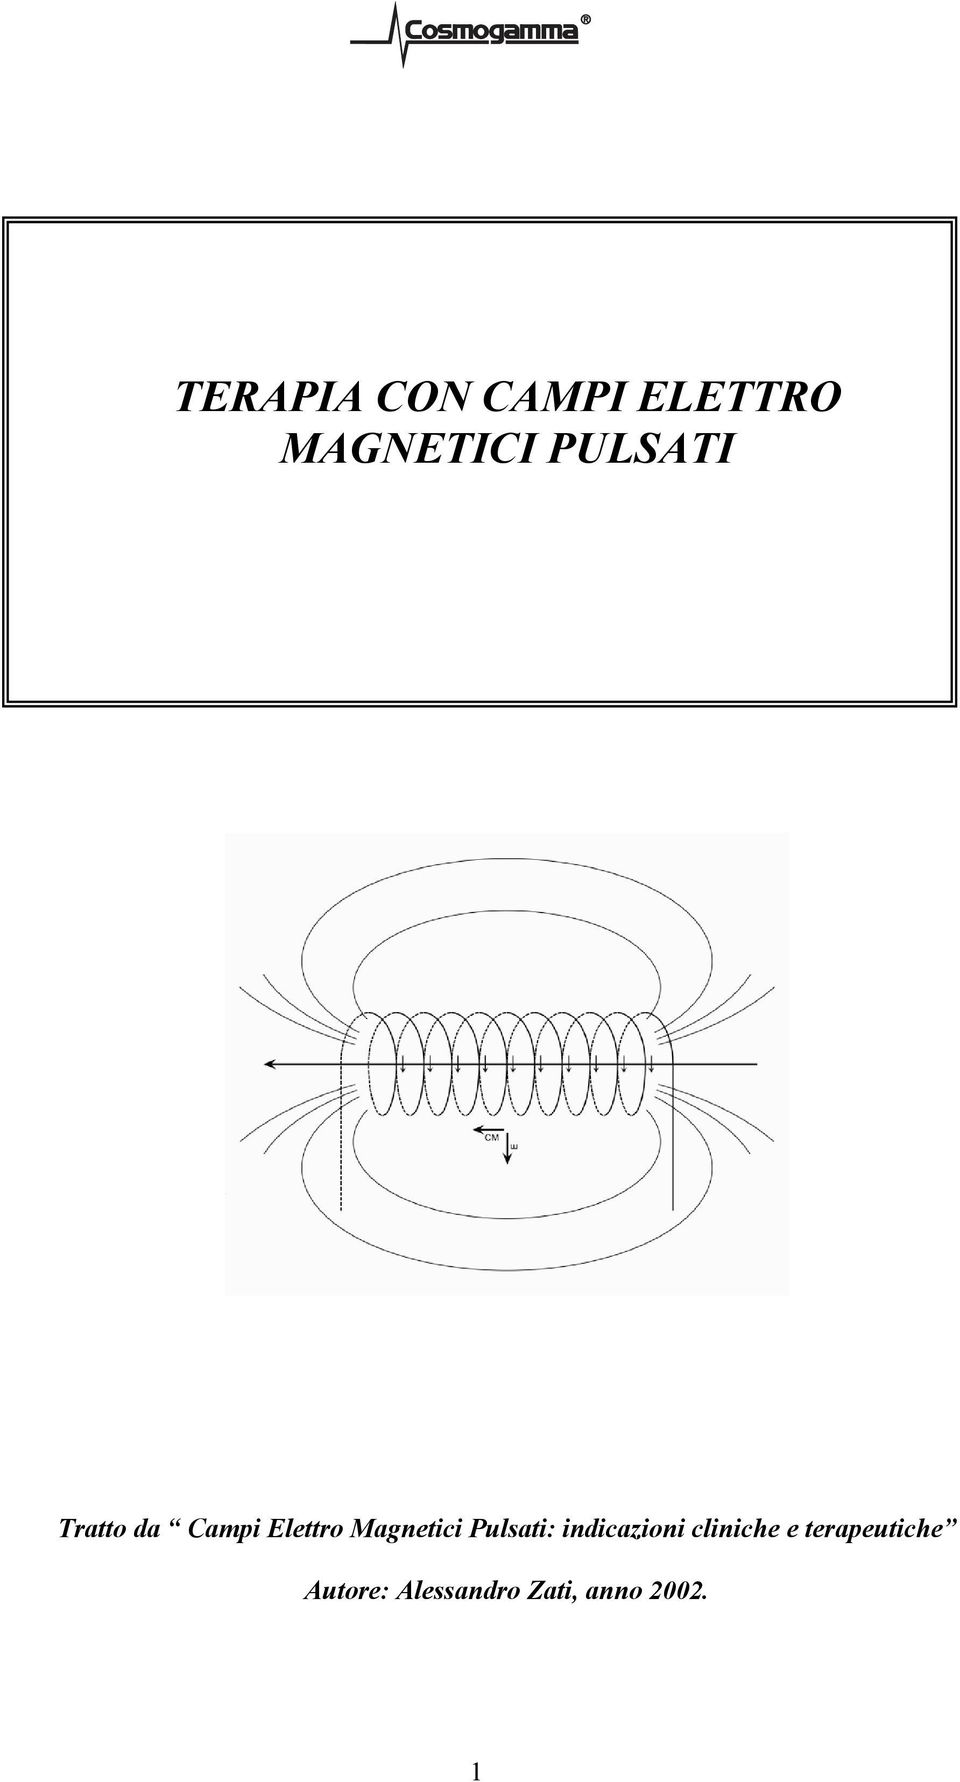 Magnetici Pulsati: indicazioni cliniche